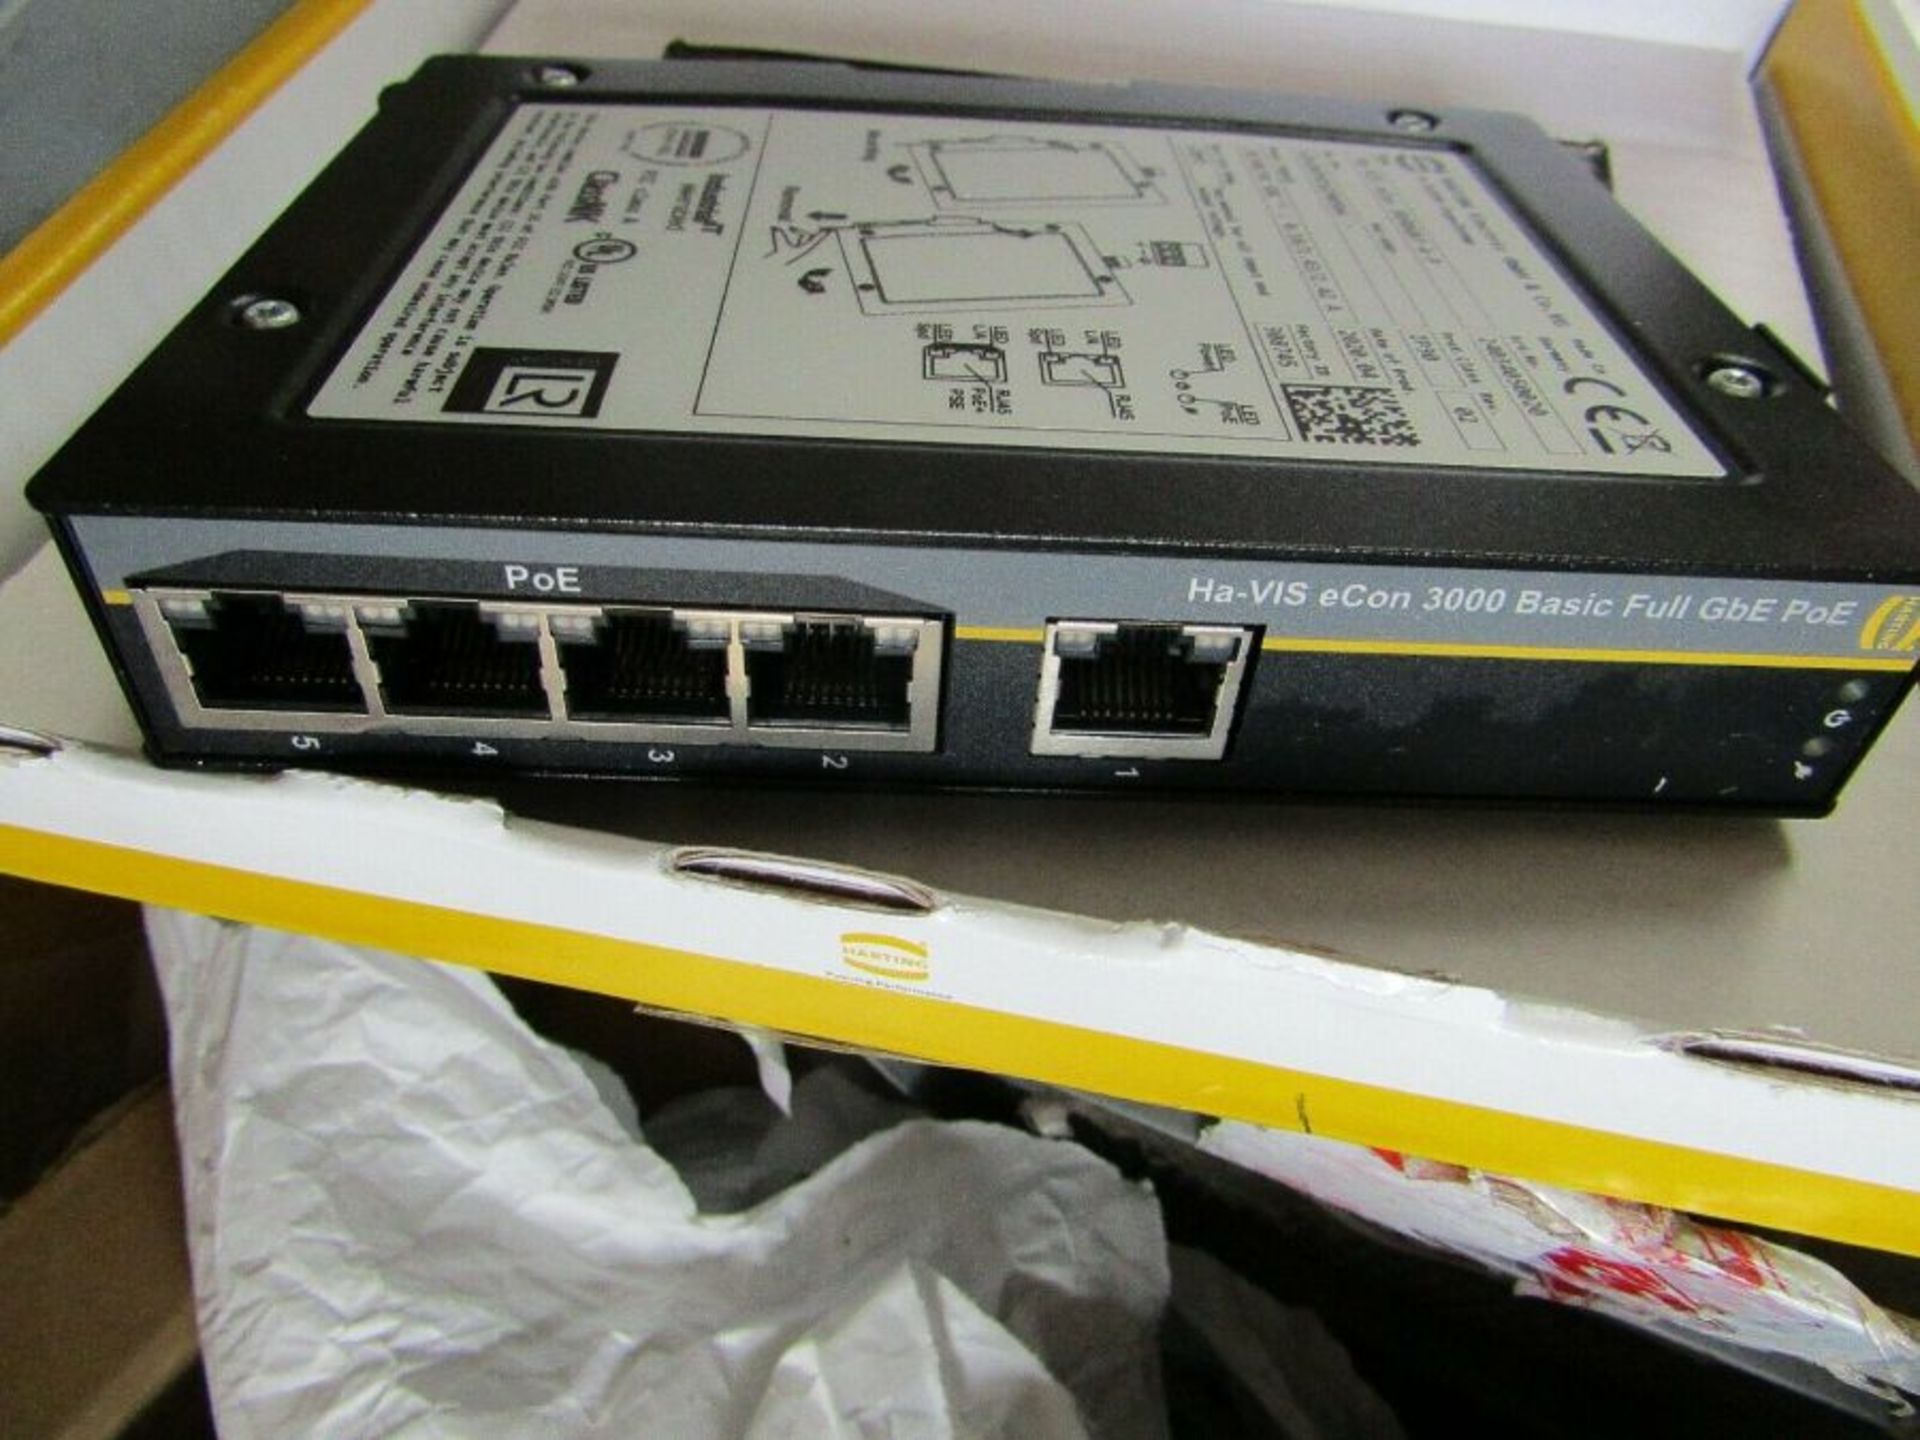 Harting Gigabit Ethernet Switch, RJ45 5 port 54Vdc Din Rail - Head 3008128894 - Image 2 of 4